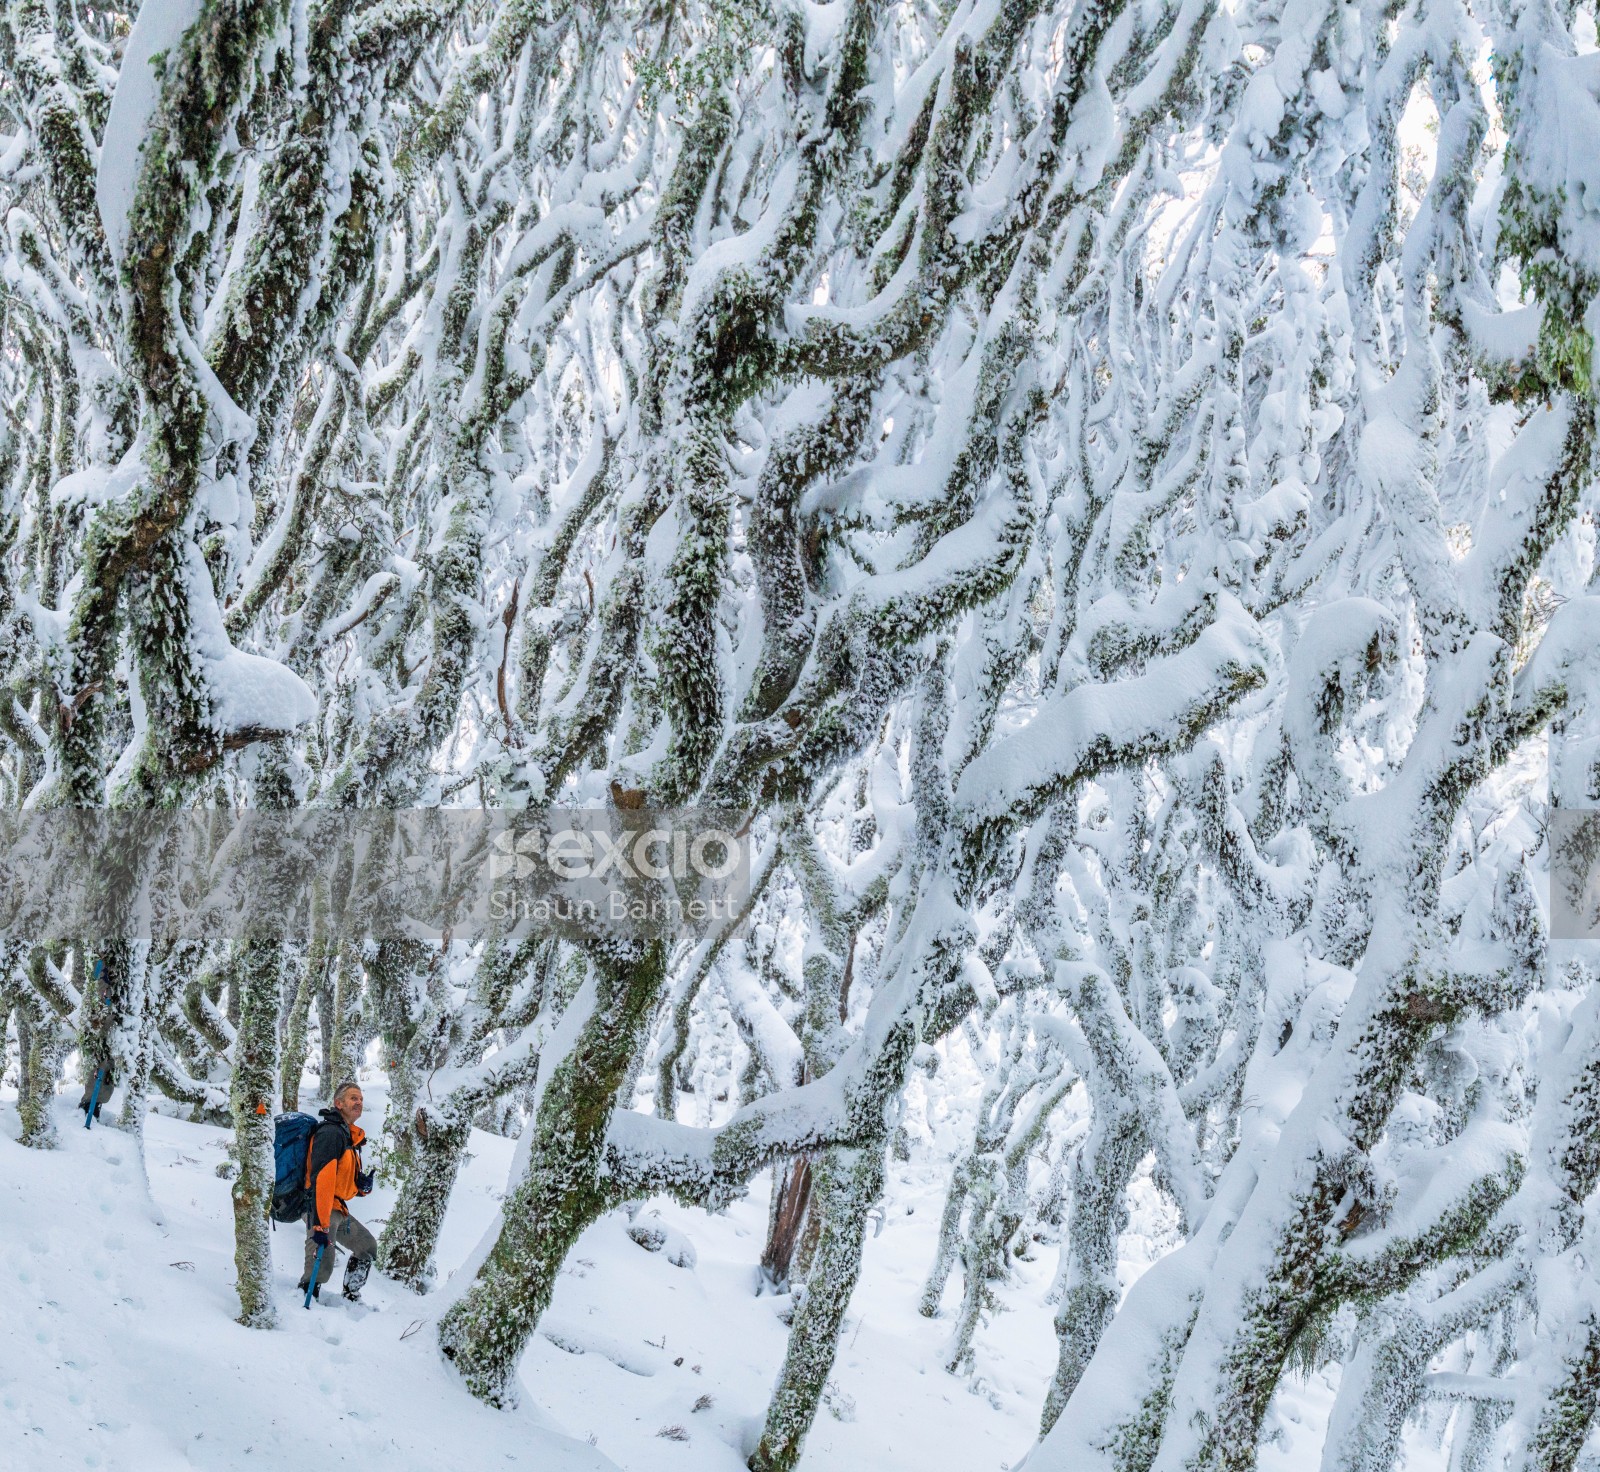 Tramper in snowy forest